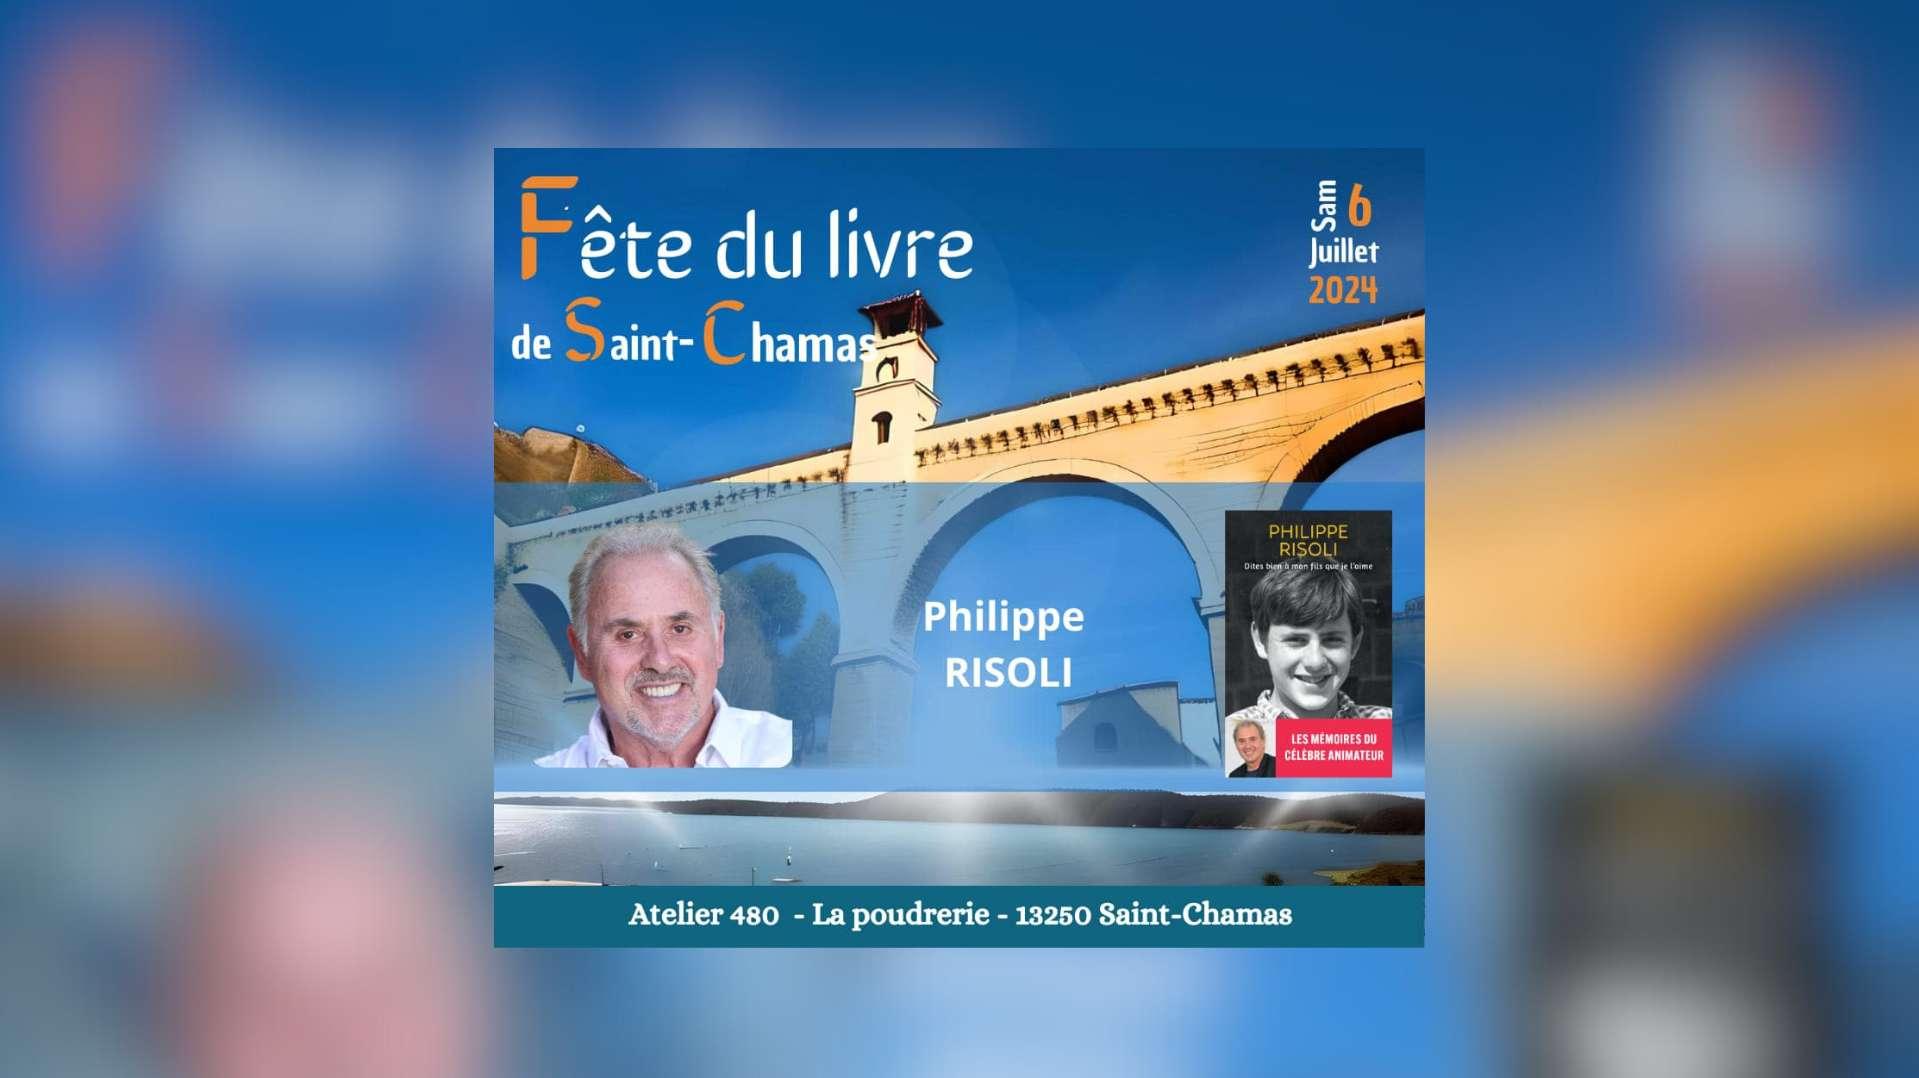 Philippe Risoli à la Fête du livre de Saint-Chamas : "Un hommage à la famille et à la passion"